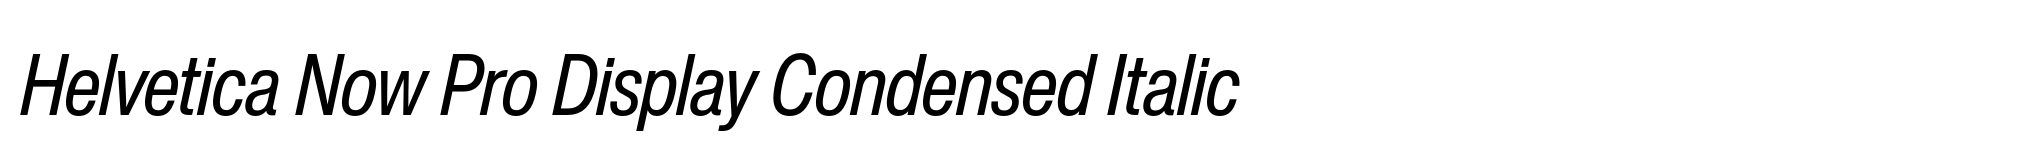 Helvetica Now Pro Display Condensed Italic image